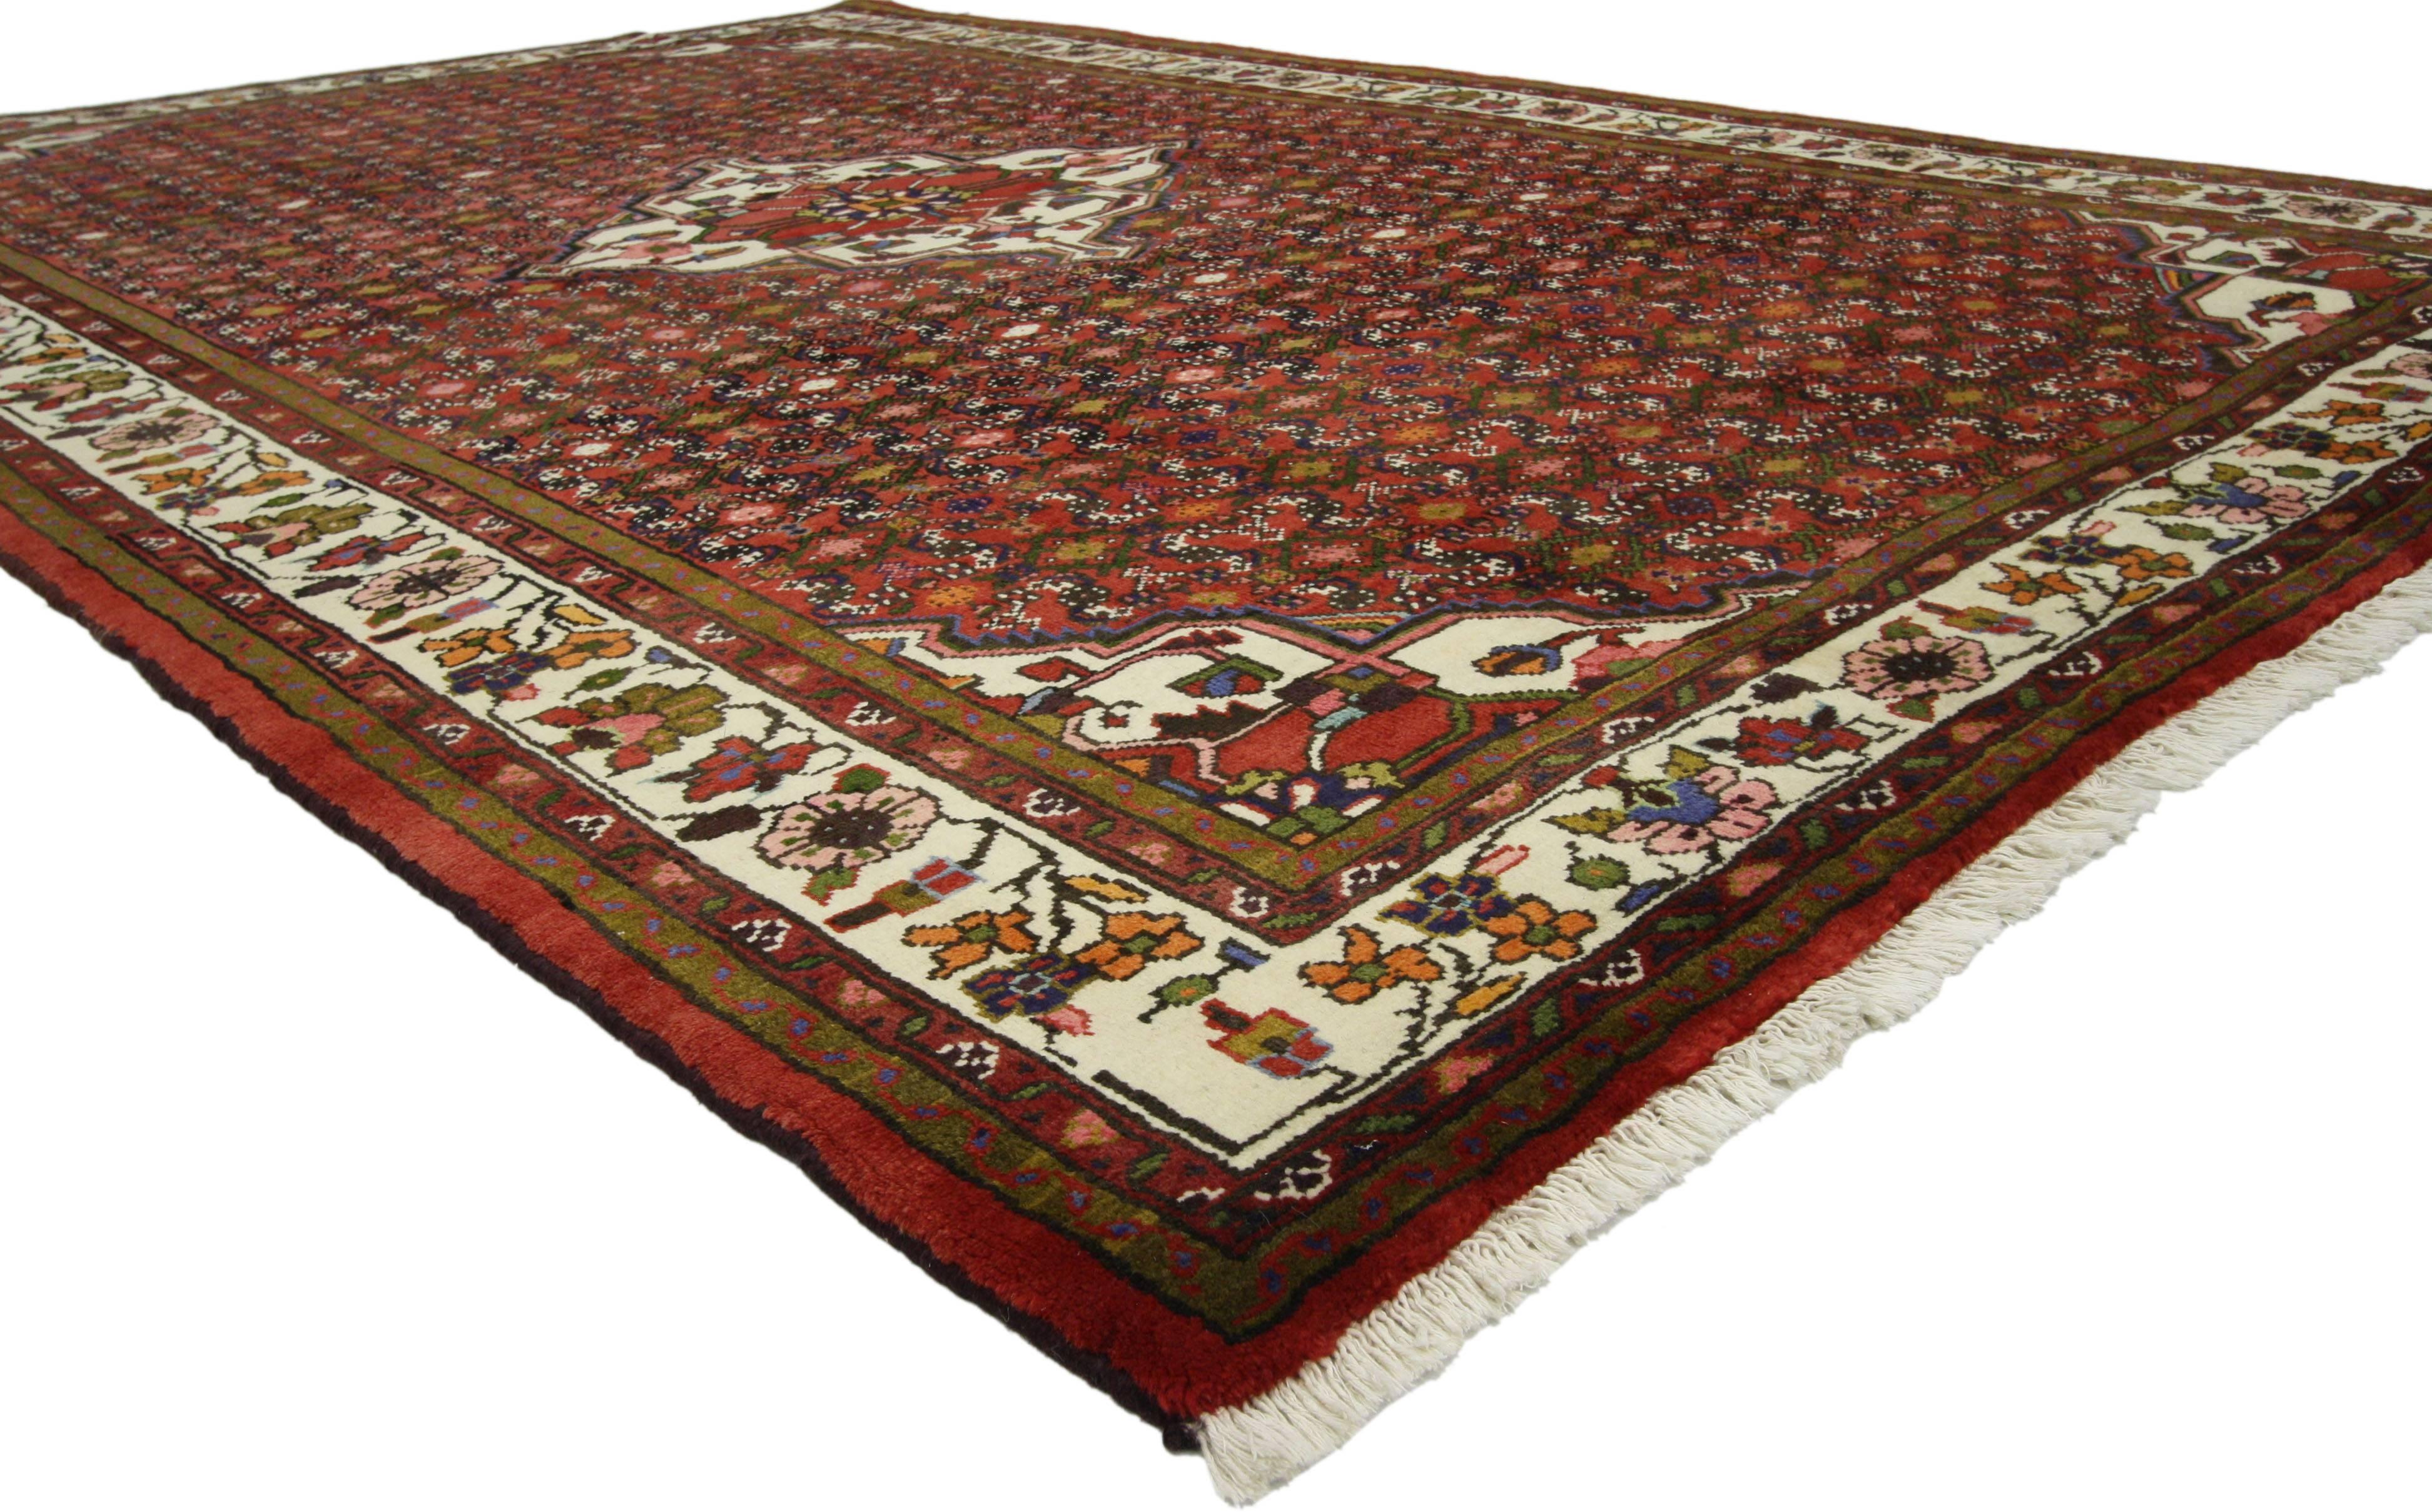 76028 Tapis persan vintage Hosseinabad de style Tudor Manor House. Ce tapis persan vintage Hosseinabad, en laine nouée à la main, présente un médaillon central en forme de diamant cuspidé entouré du motif classique Herati. Le motif Herati est l'un